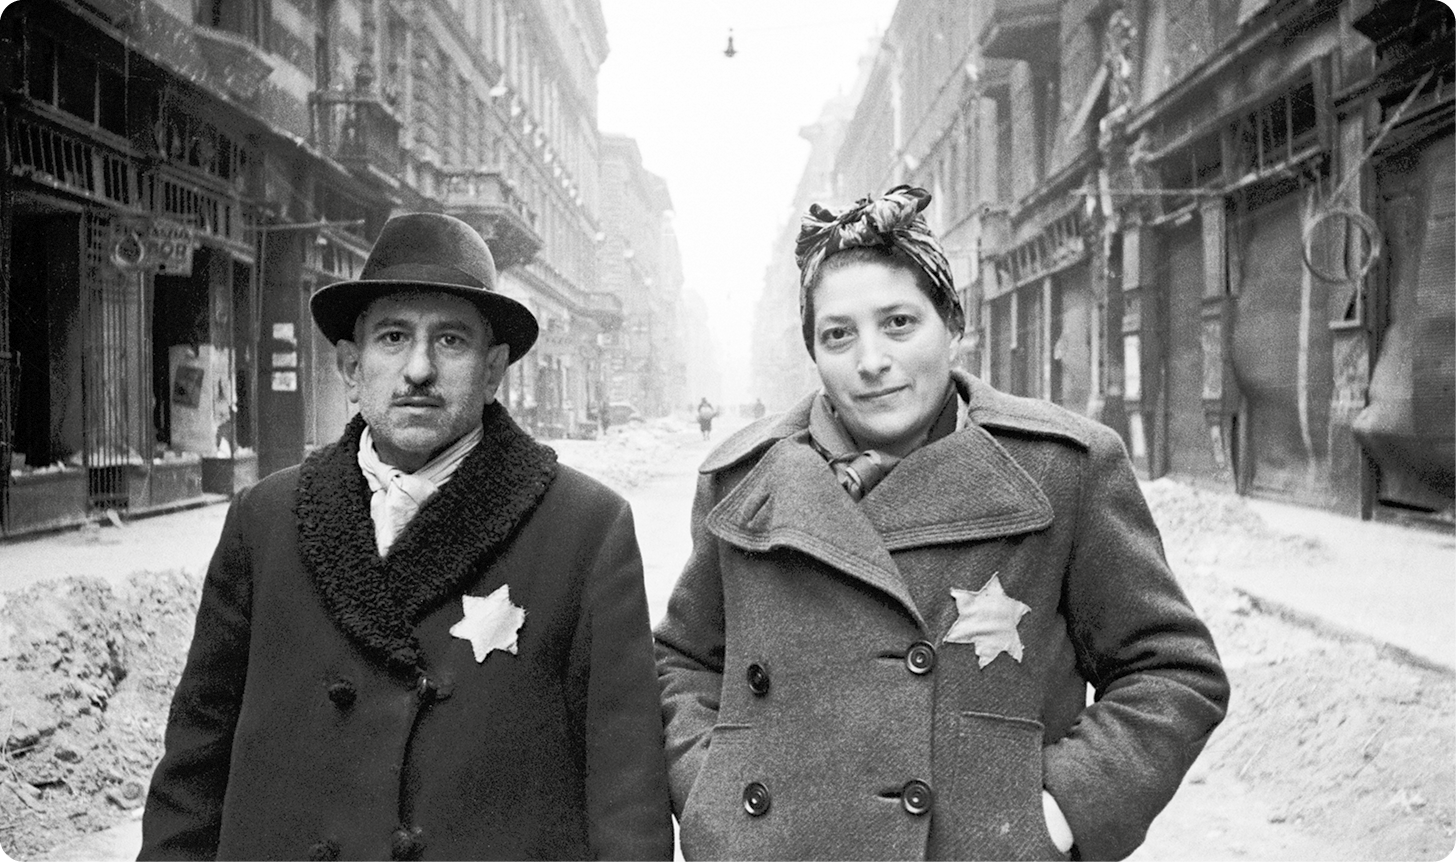 Fotografia em preto e branco. À esquerda, um homem usando chapéu e casaco, com uma estrela de Davi no peito. Ao lado, uma mulher com um lenço na cabeça, usando um sobretudo com uma estrela de Davi. Eles estão de pé em uma rua com neve ao redor.